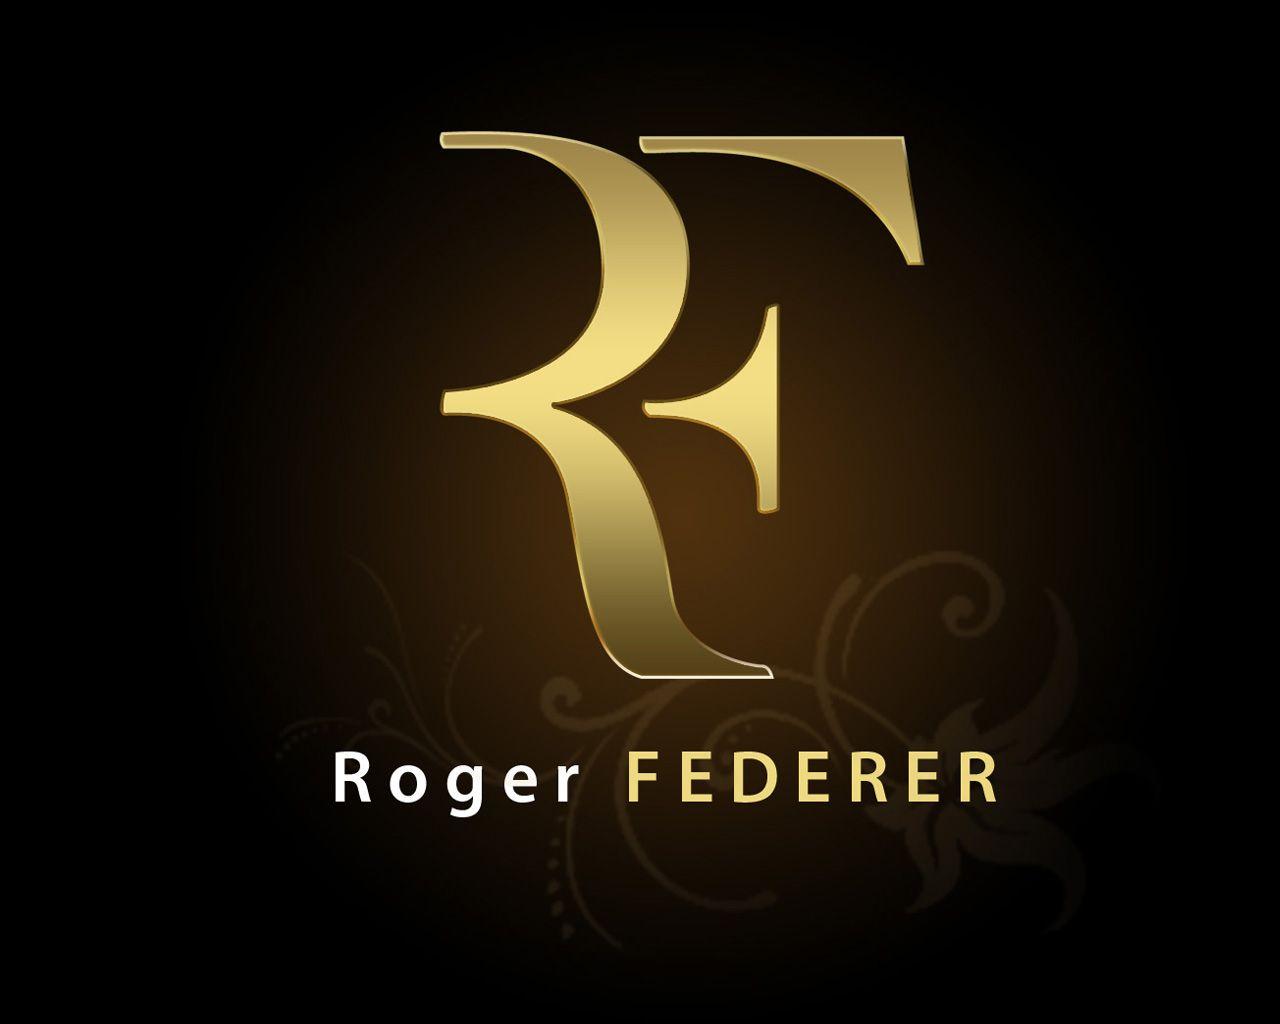 Download Roger Federer Logo HD Desktop free high definition